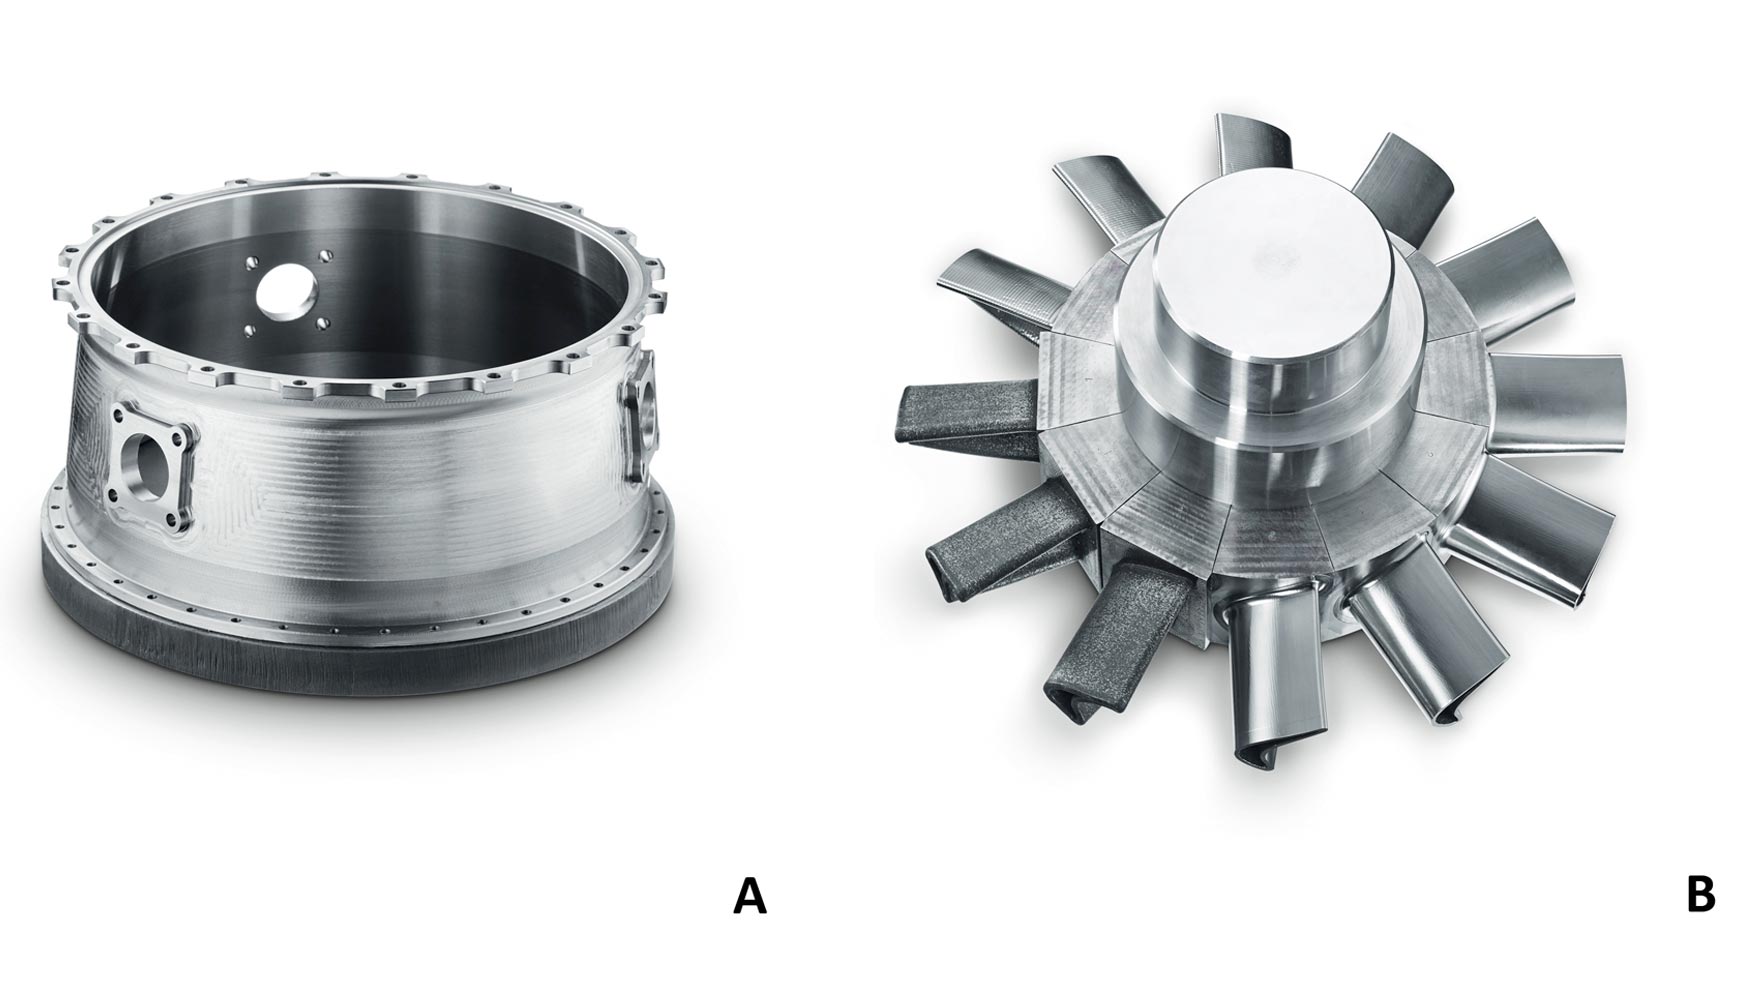 Mecanizado completo de componentes tridimensionales: Carcasa de turbina (A) y blisk (B) para la industria aeroespacial